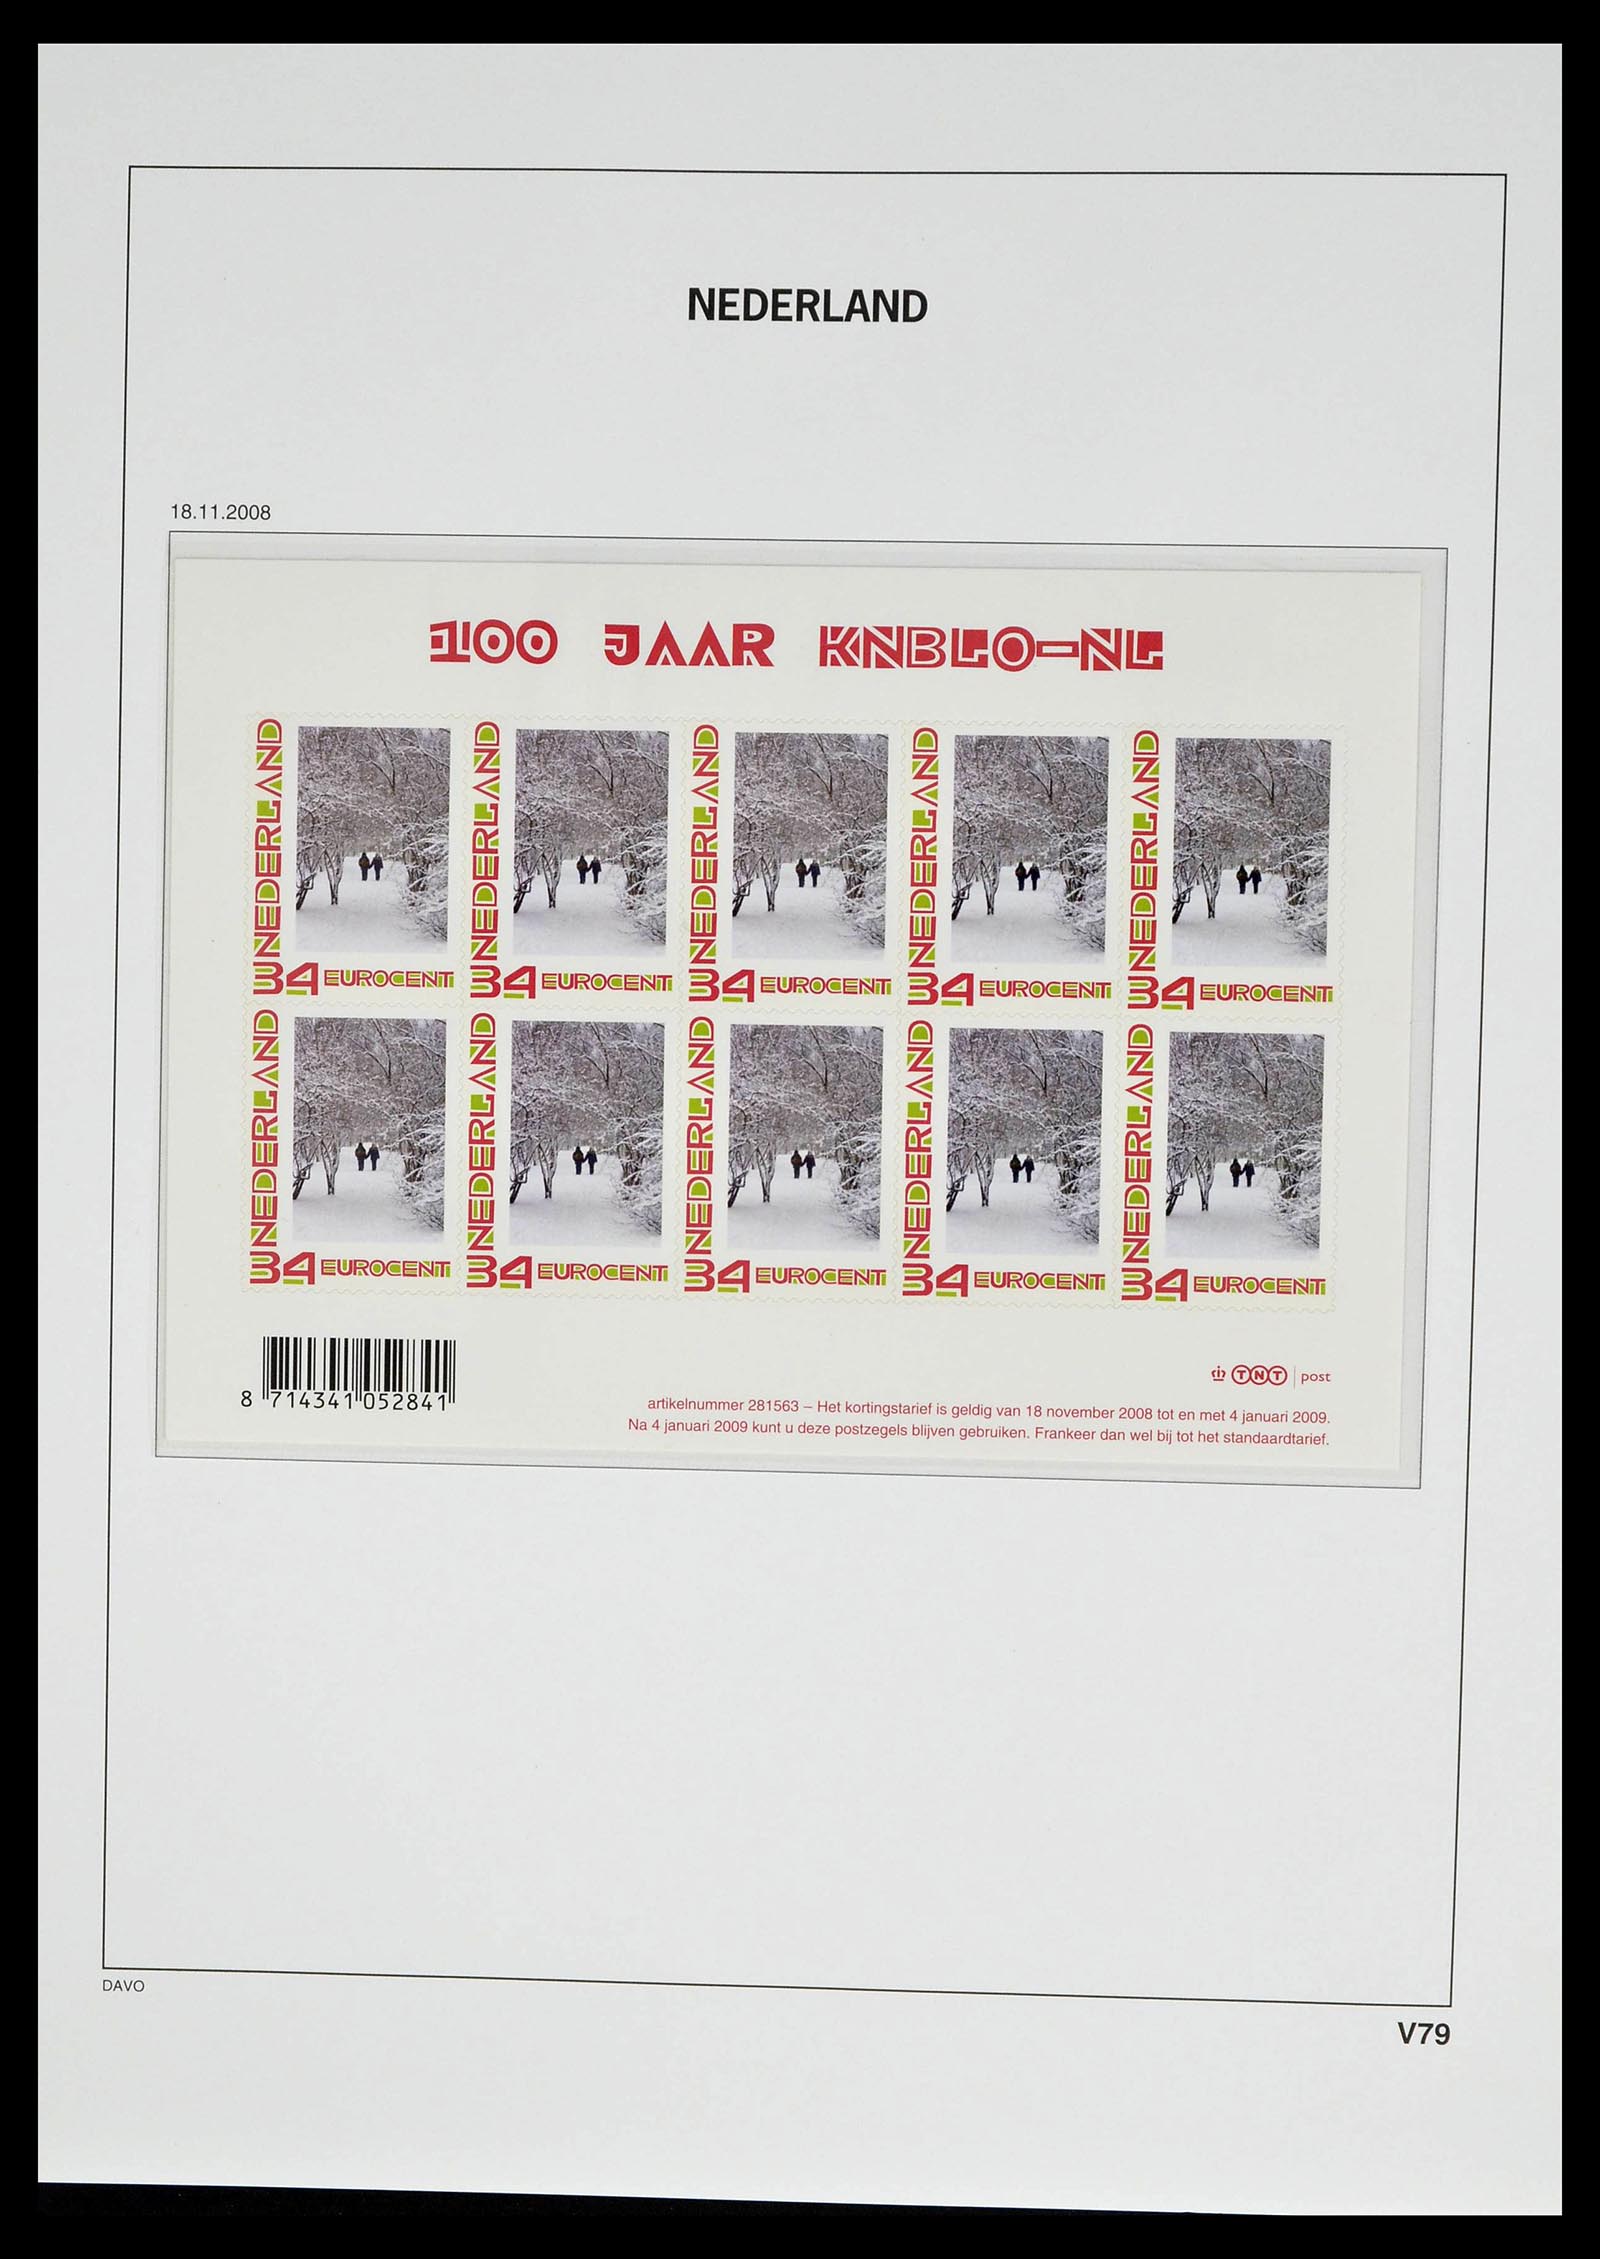 39134 0093 - Stamp collection 39134 Netherlands sheetlets 1992-2019!